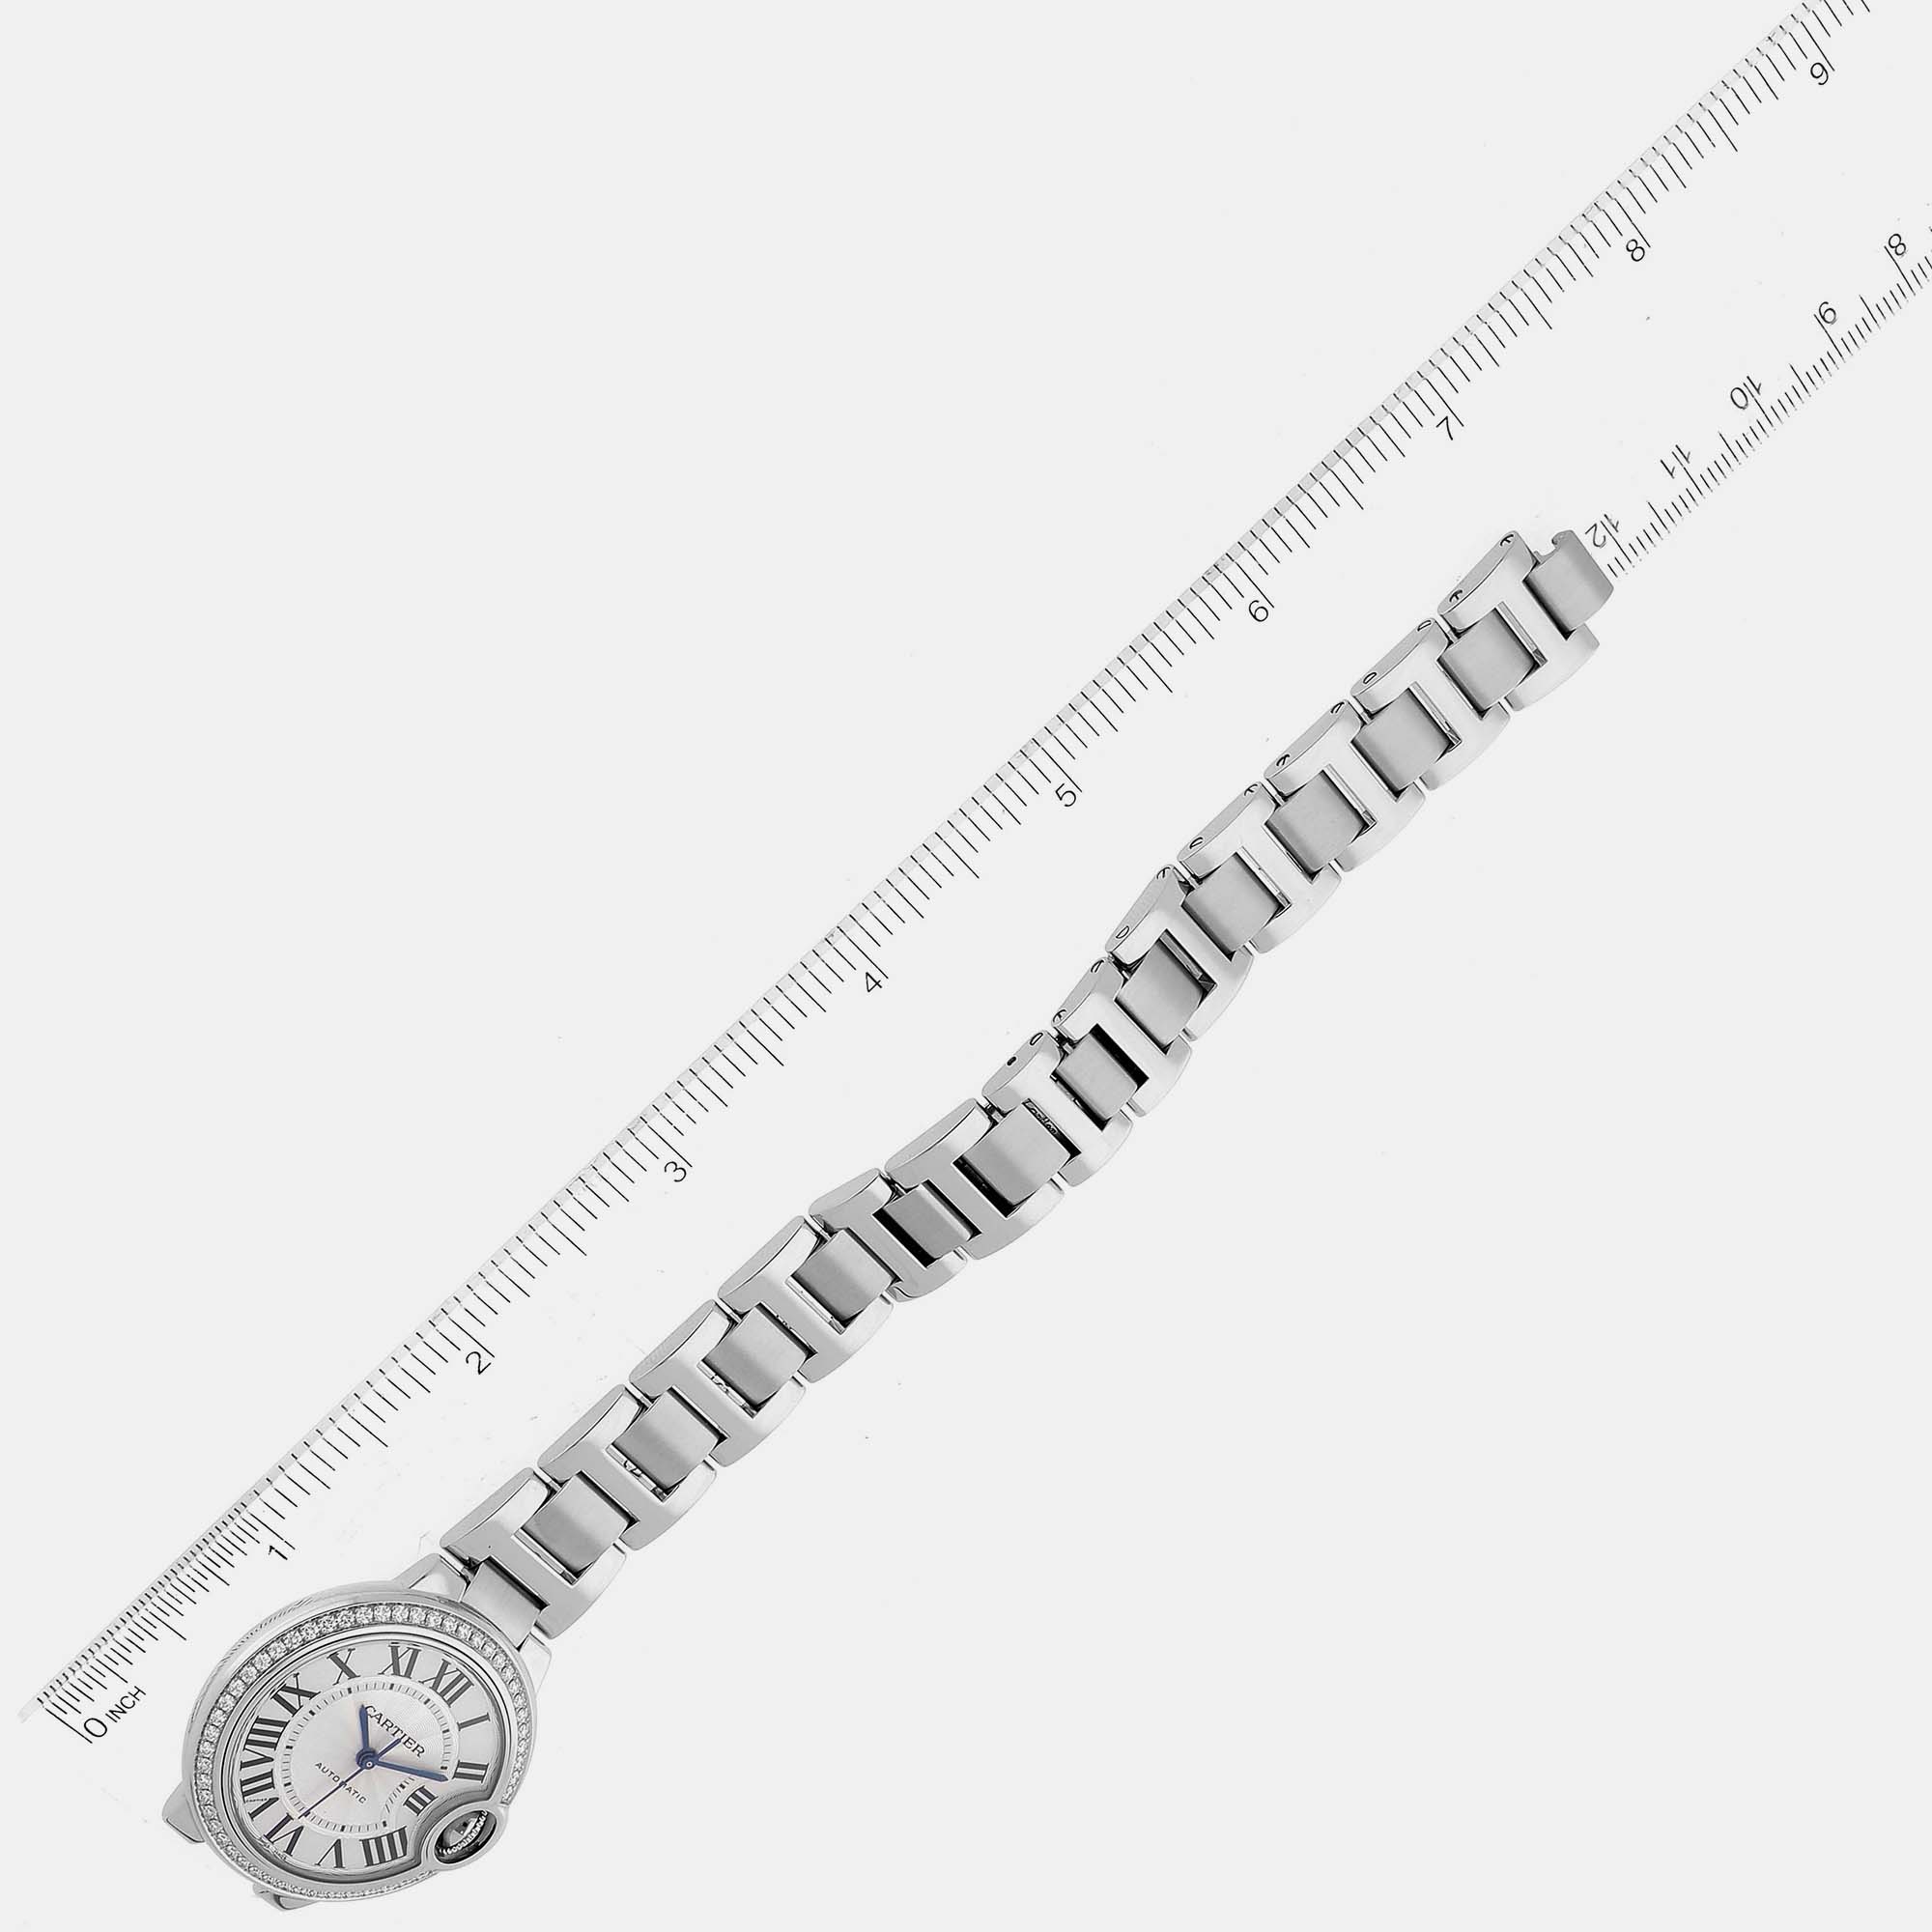 Cartier Ballon Bleu Steel Diamond Bezel Ladies Watch W4BB0016 33 Mm